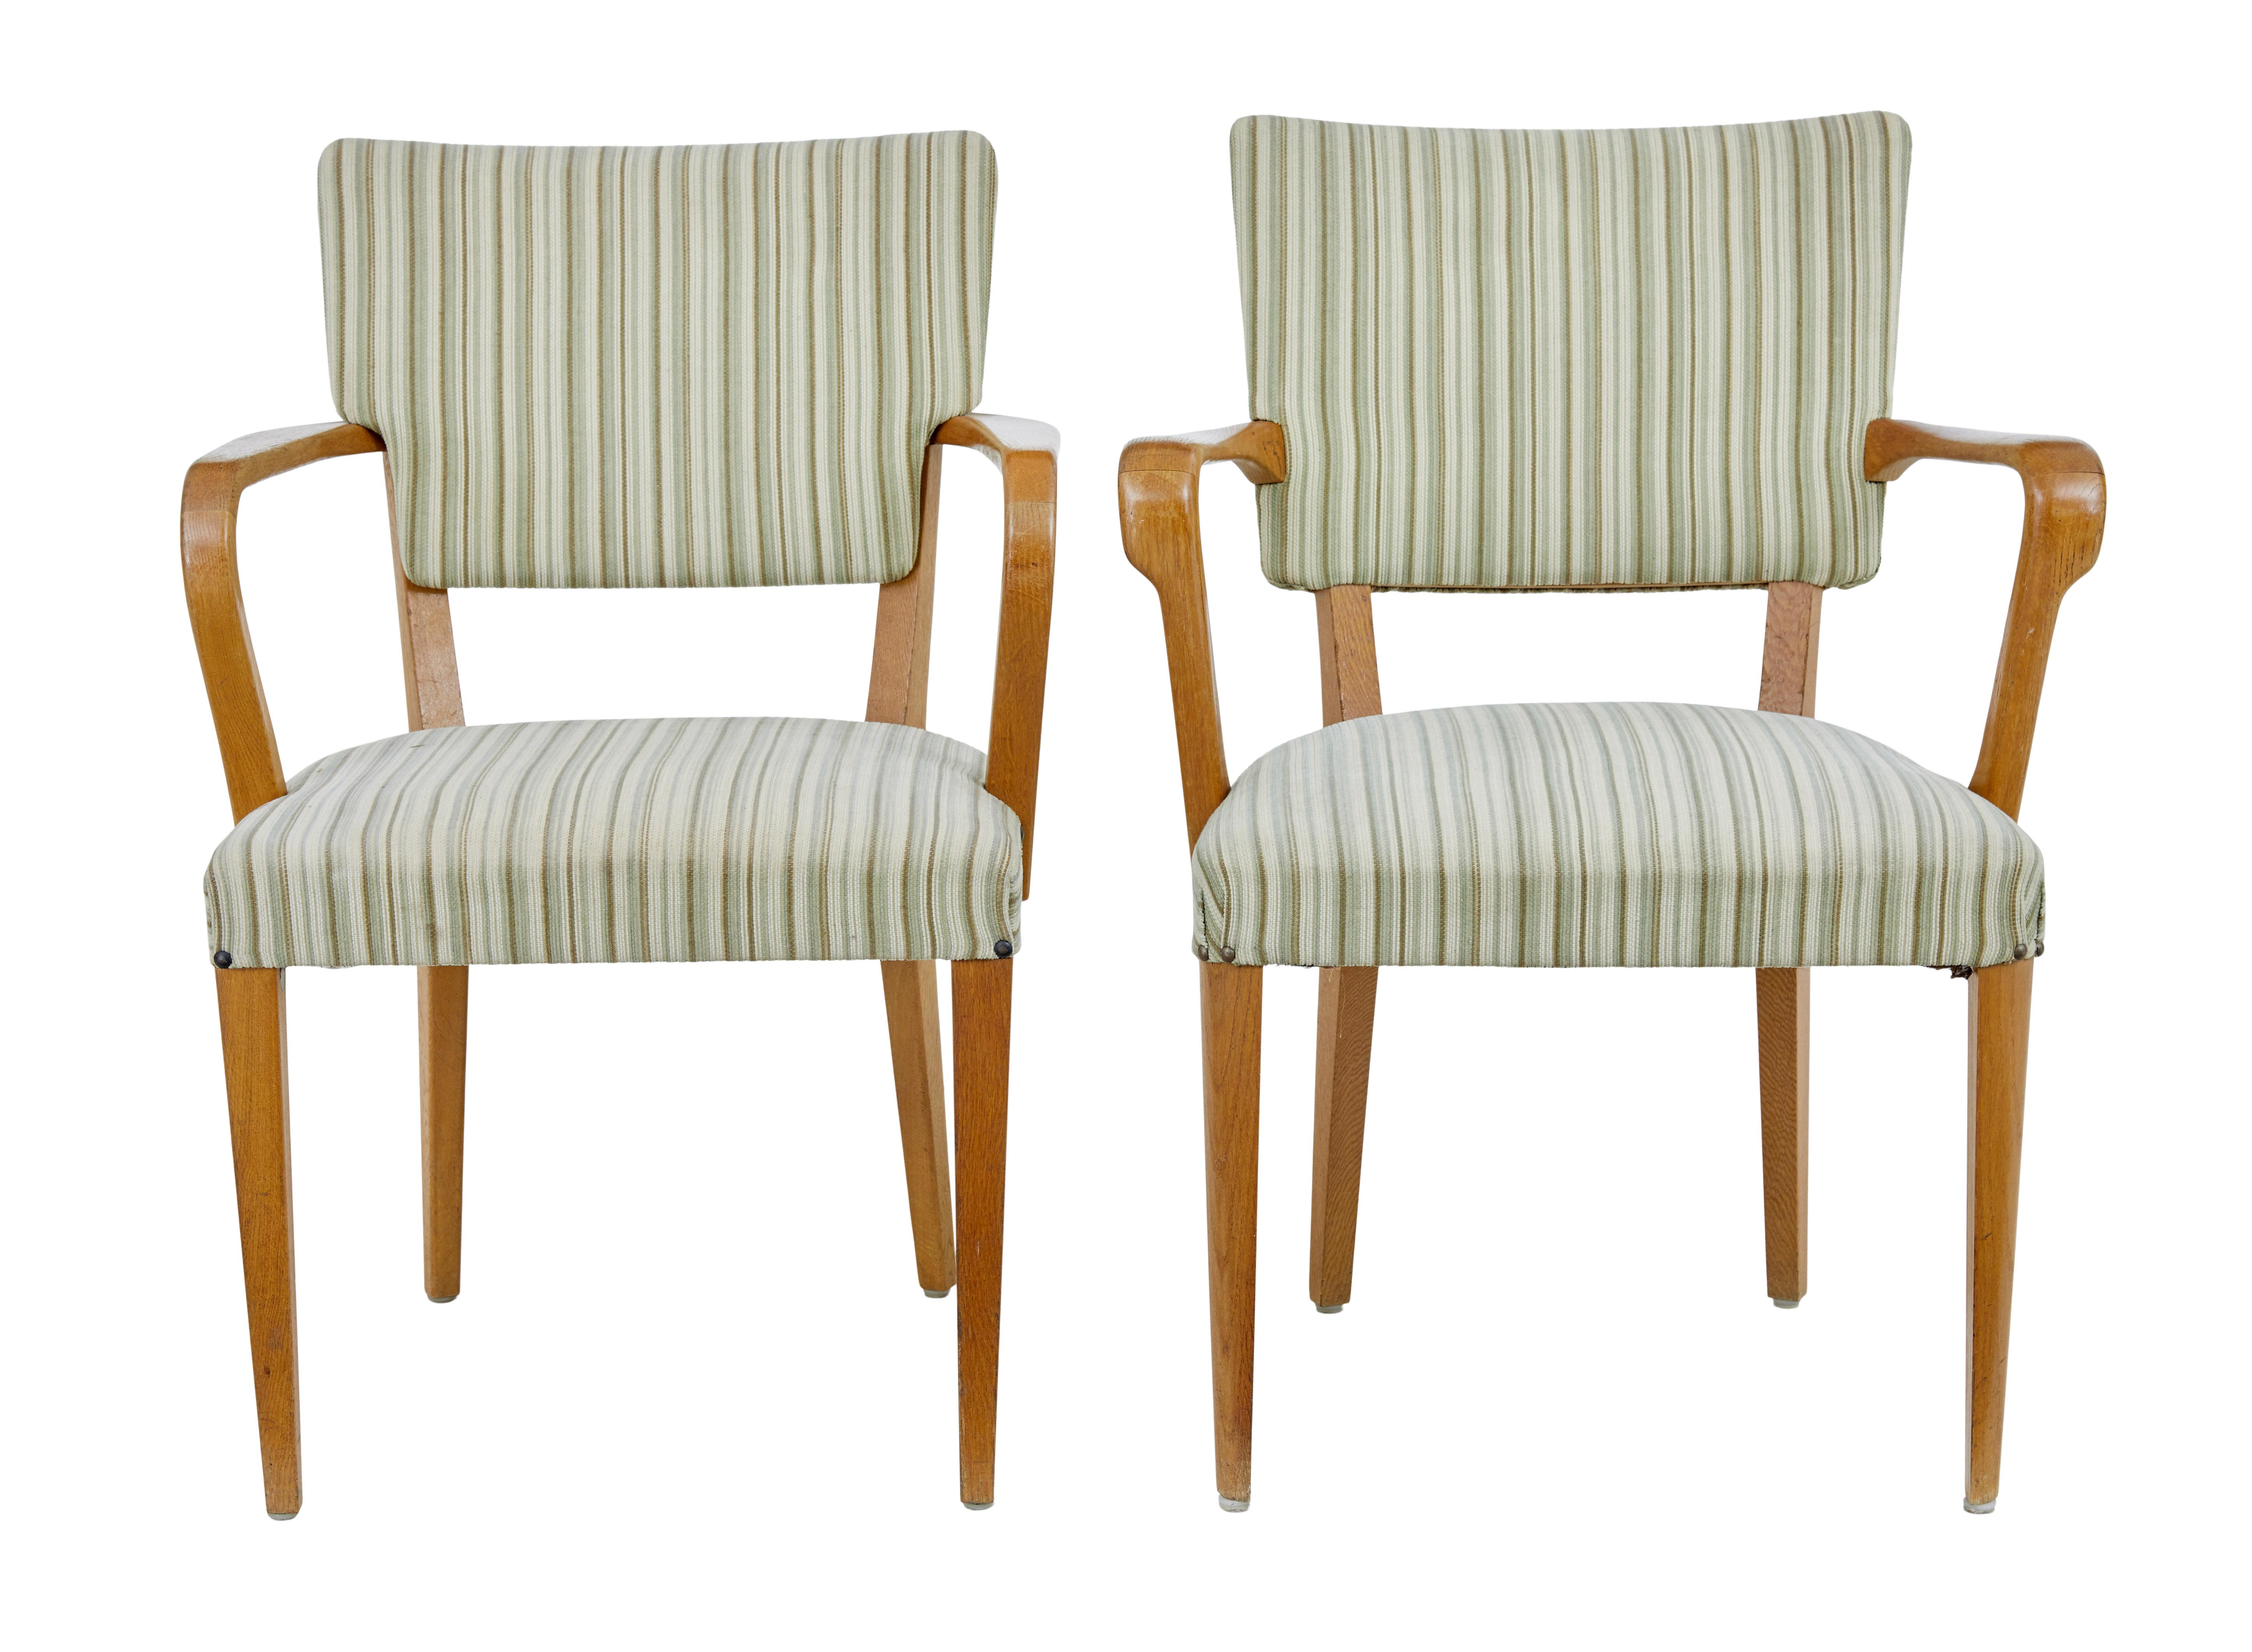 Harlekin Satz von 6 schwedischen Sesseln aus Ulme 1960er Jahre von atvidabergs um 1970

Bequemer Satz von 6 Stühlen aus den 1970er Jahren, der aus 4 Stühlen in einem Design und 2 Stühlen in einem anderen Design besteht. Ein Beispiel von jedem wurde